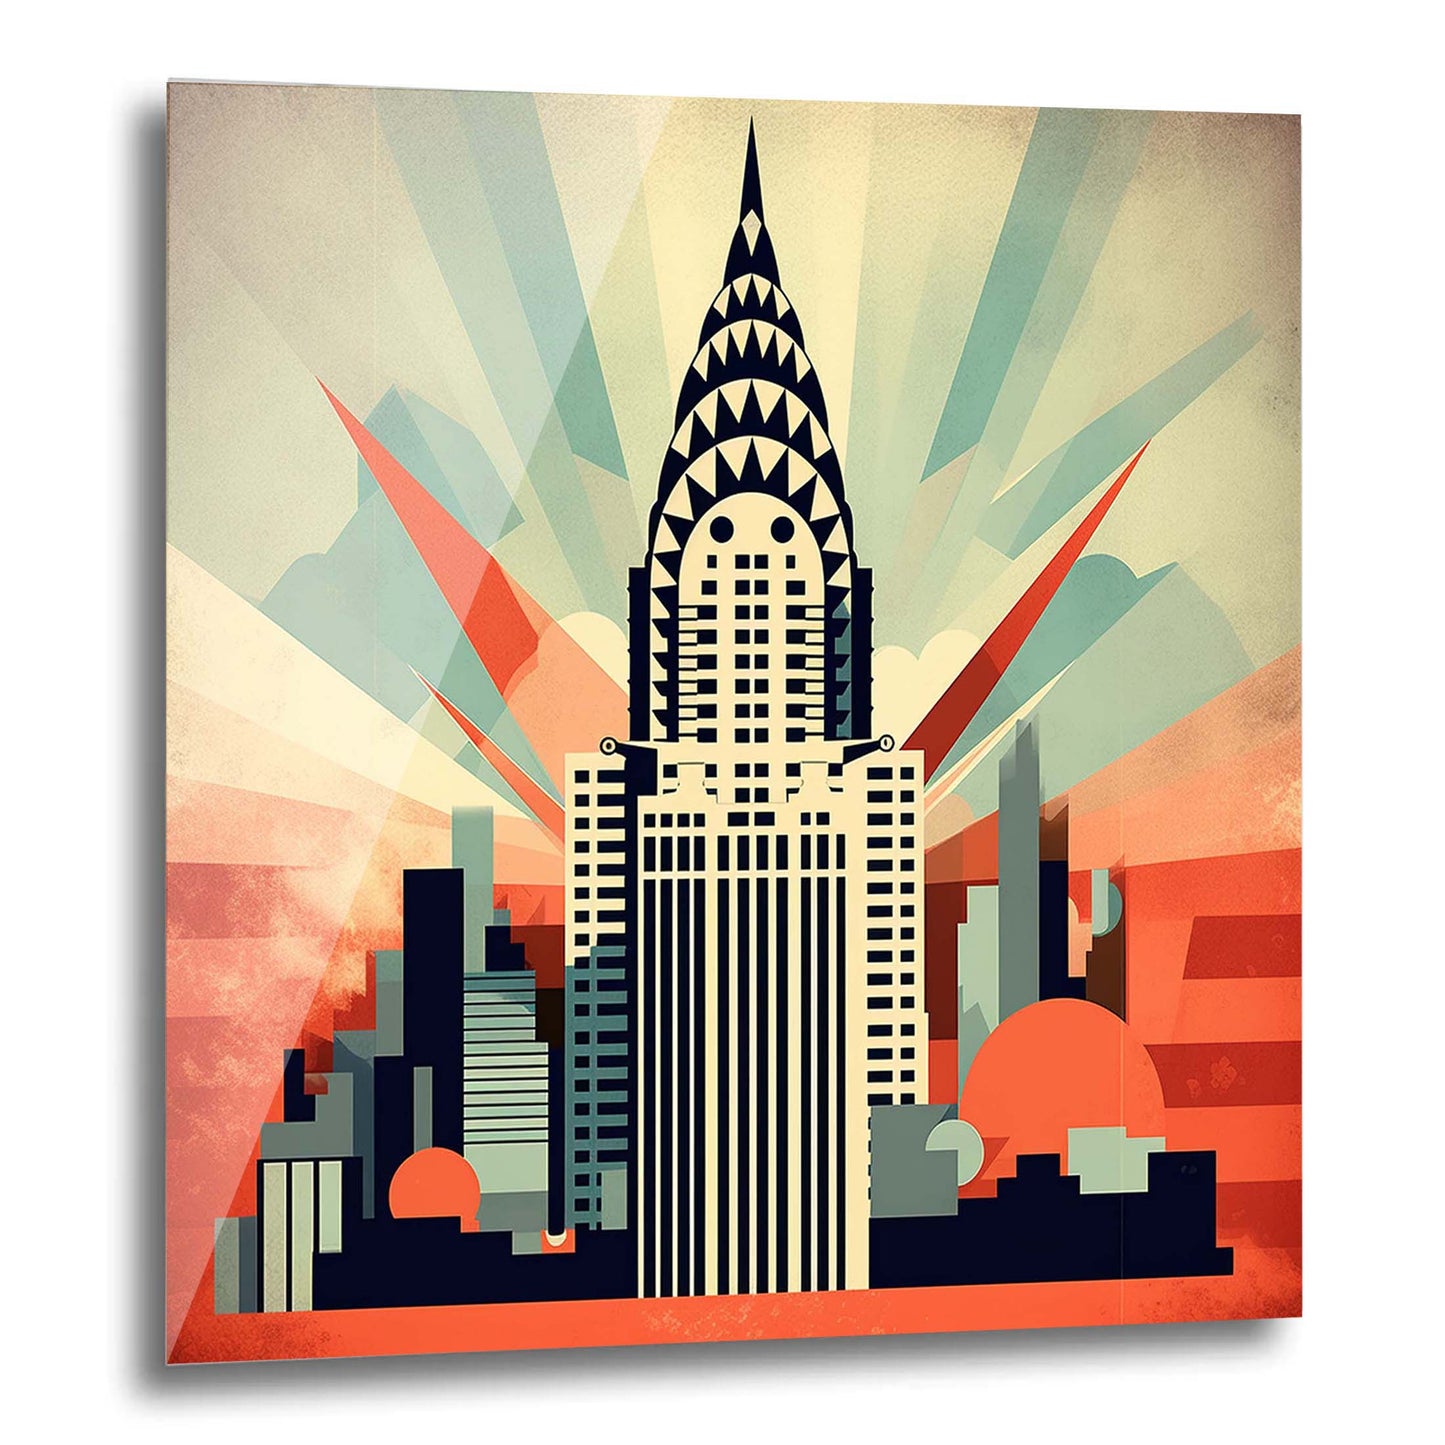 New York Chrysler Building - peinture murale dans le style du minimalisme